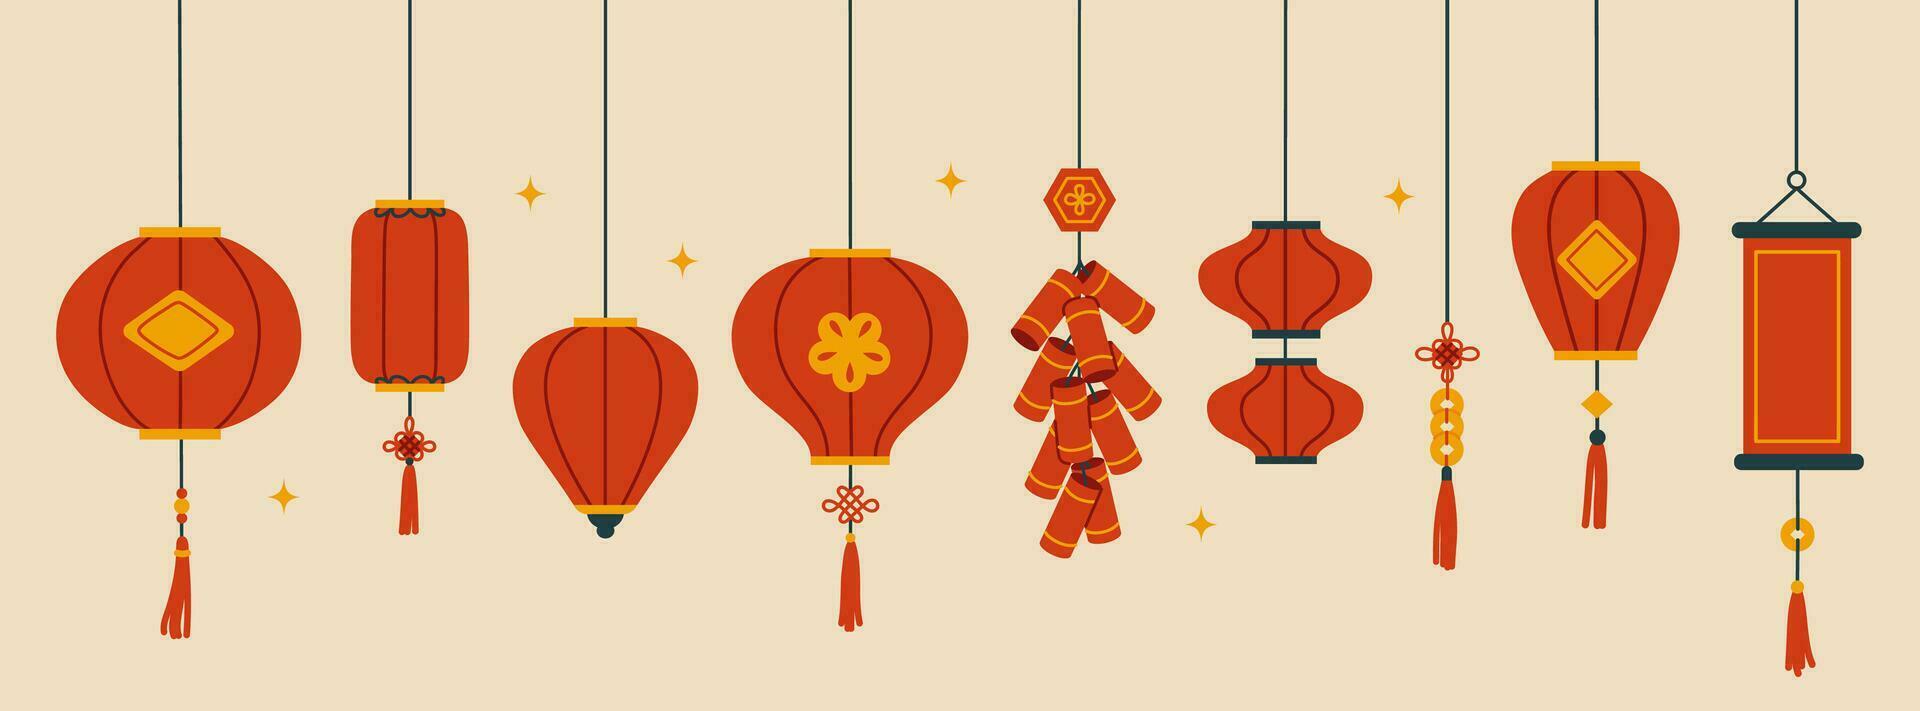 samling av kinesisk hängande lyktor. dekorationer för de kinesisk ny år. vektor platt illustration.